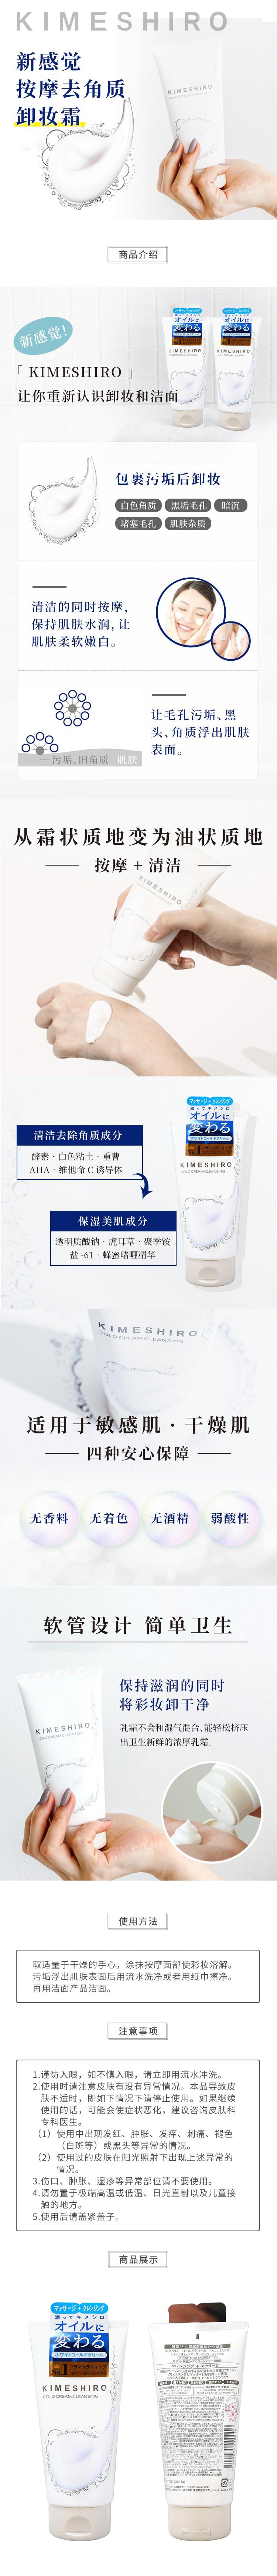 日本 KIMESHIRO 新感覺 冷冰肌按摩去角質 卸妝乳霜 150g